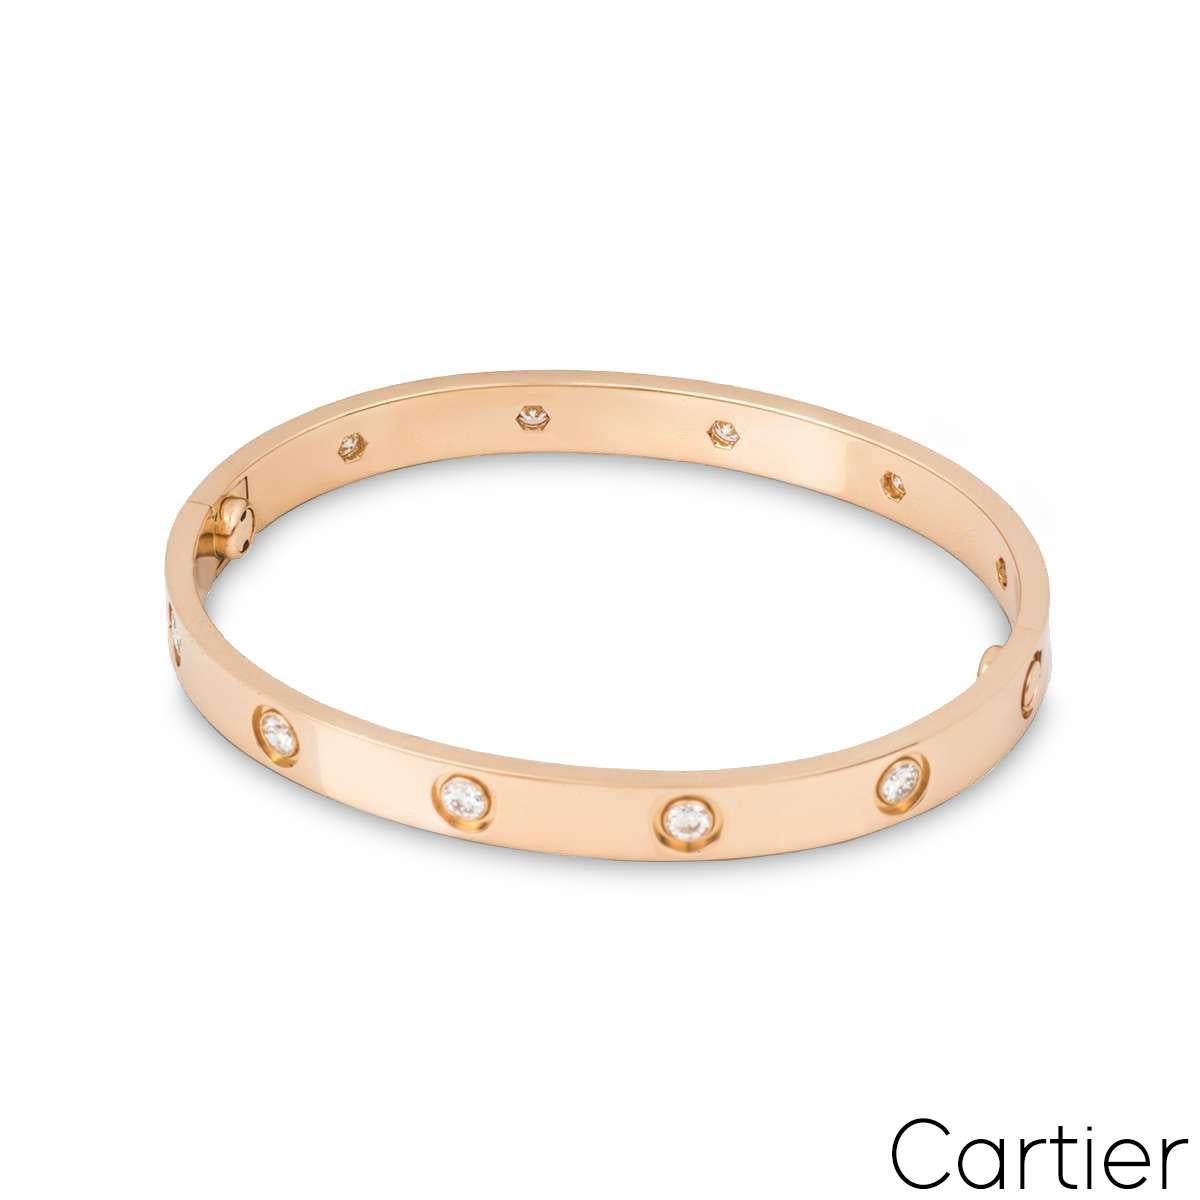 Un bracelet Love en or rose 18 carats et plein de diamants de Cartier. Serti de 10 diamants ronds de taille brillant circulant sur le bord extérieur, pour un total de 0,96ct. Le bracelet présente le nouveau style de fixation à vis, est de taille 17,